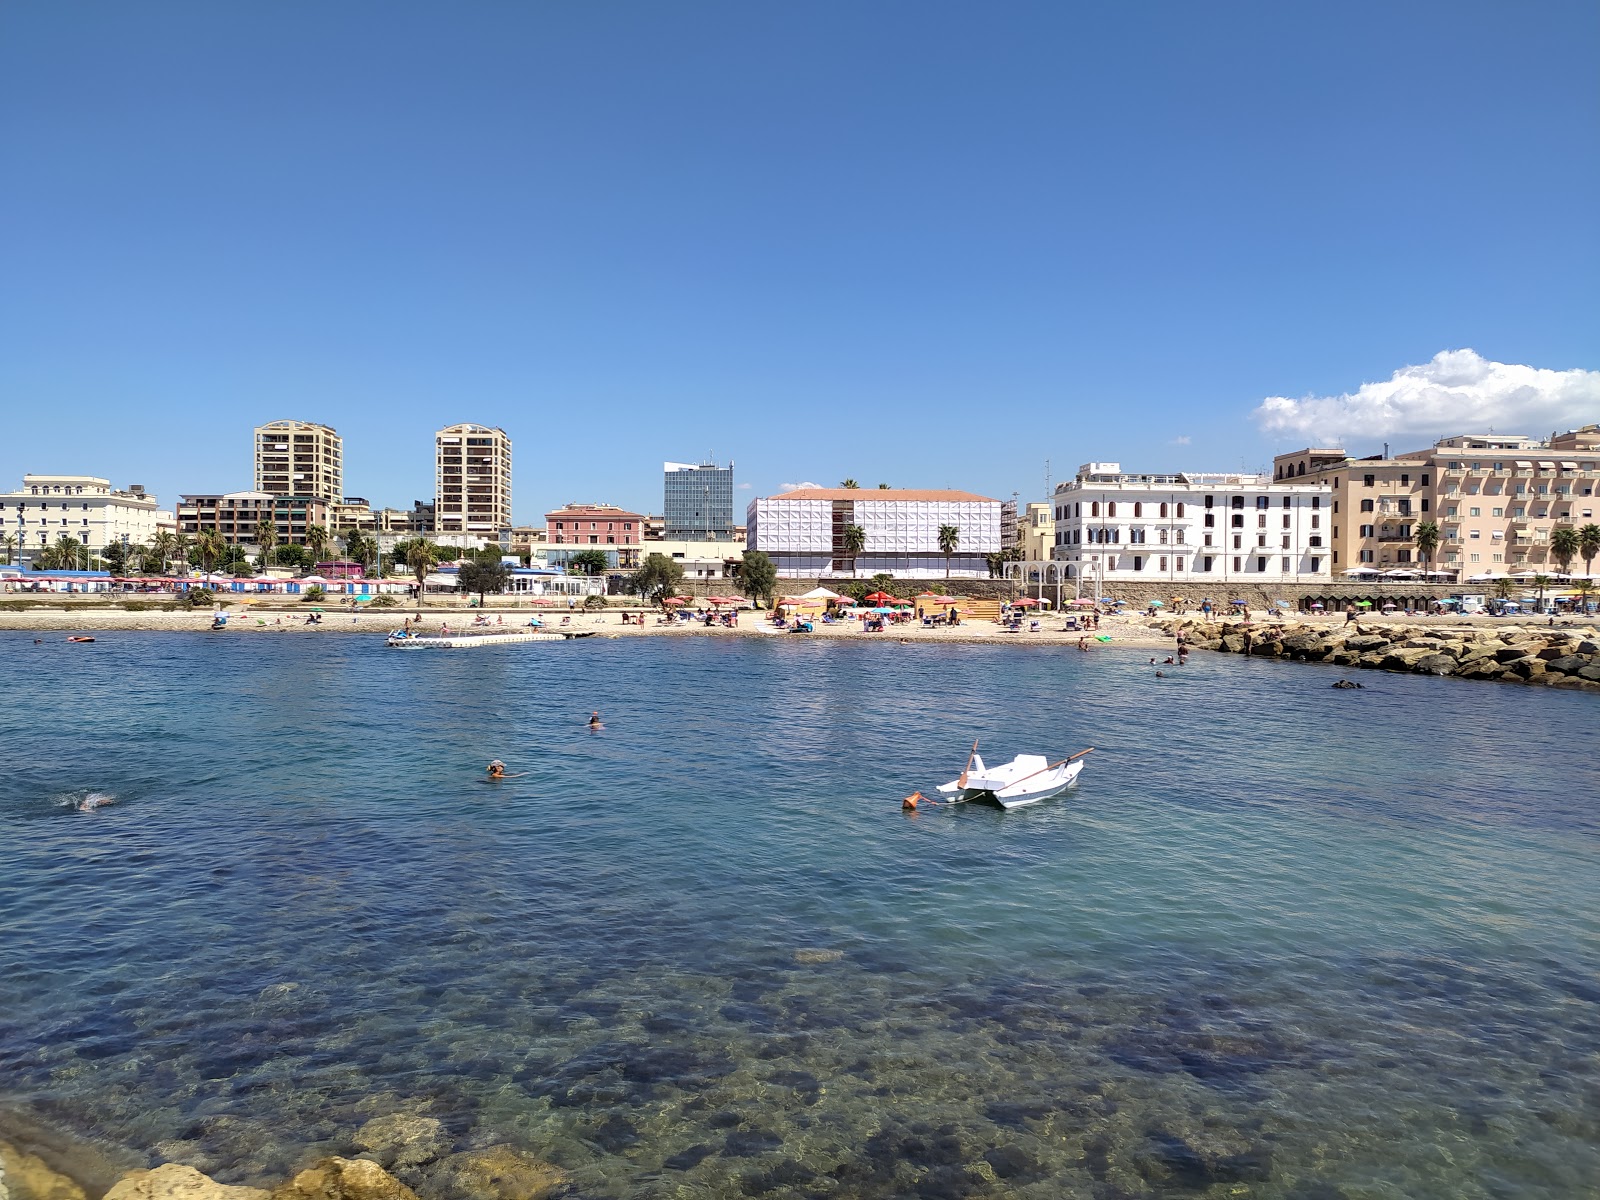 Foto av Spiaggia il pirgo med medium nivå av renlighet